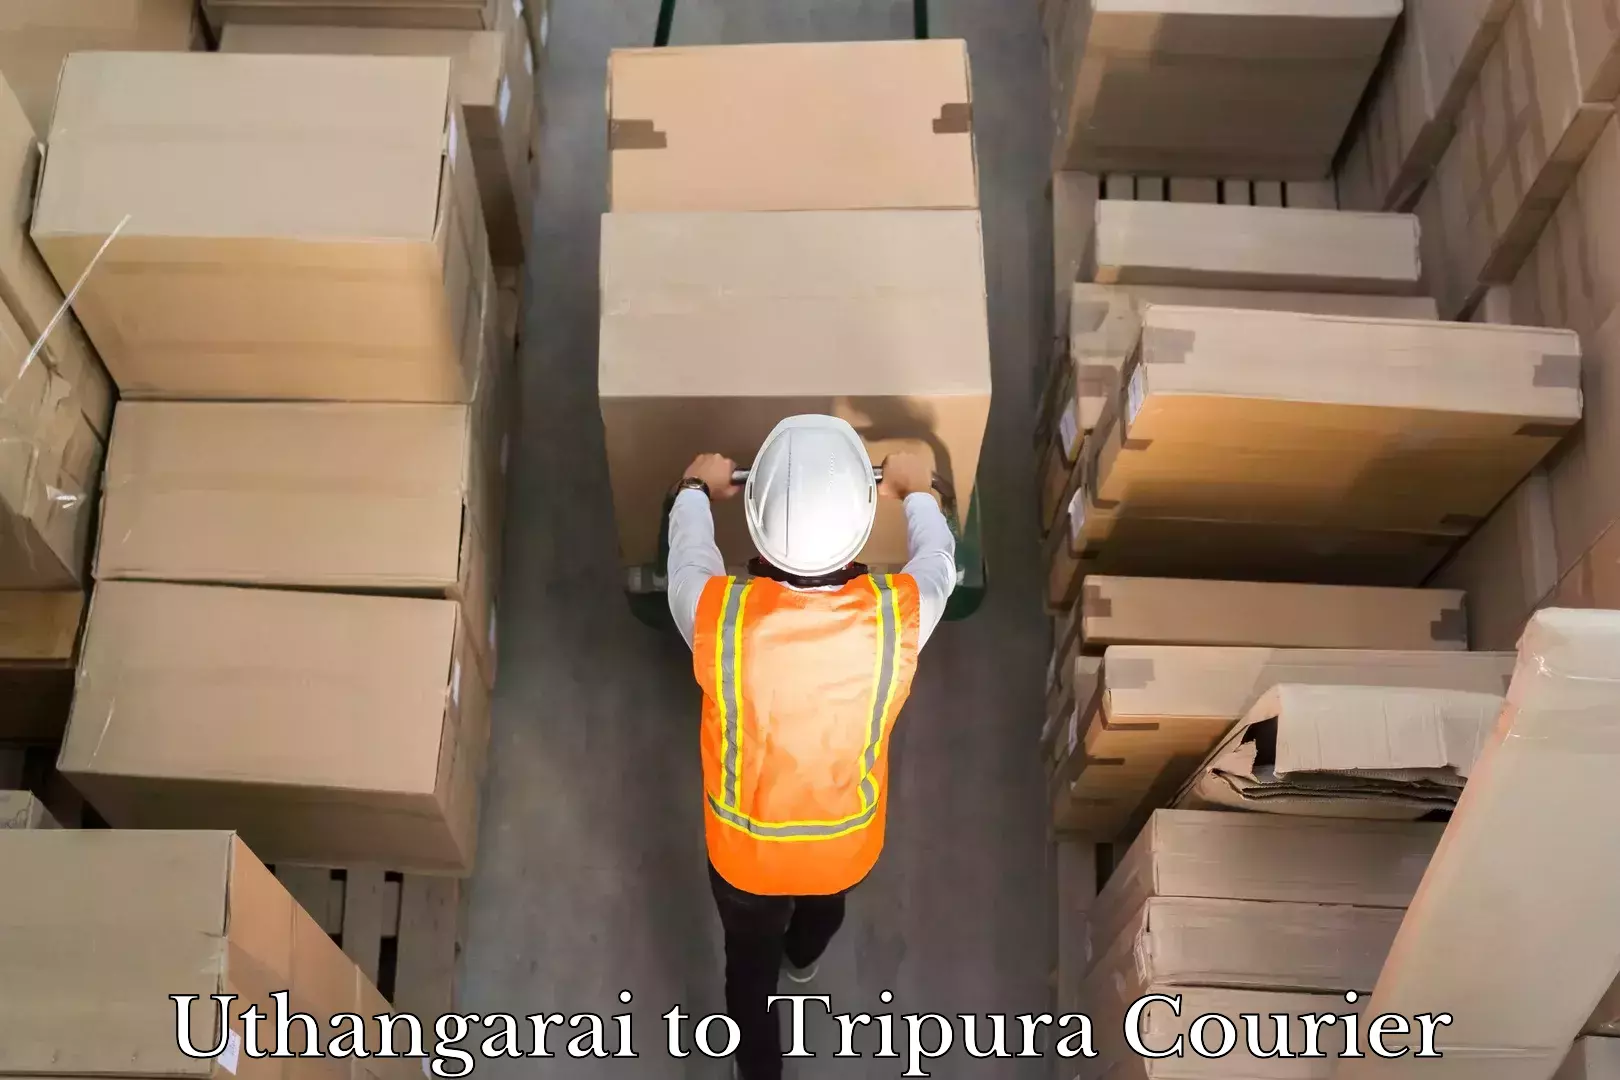 High-capacity shipping options Uthangarai to Tripura